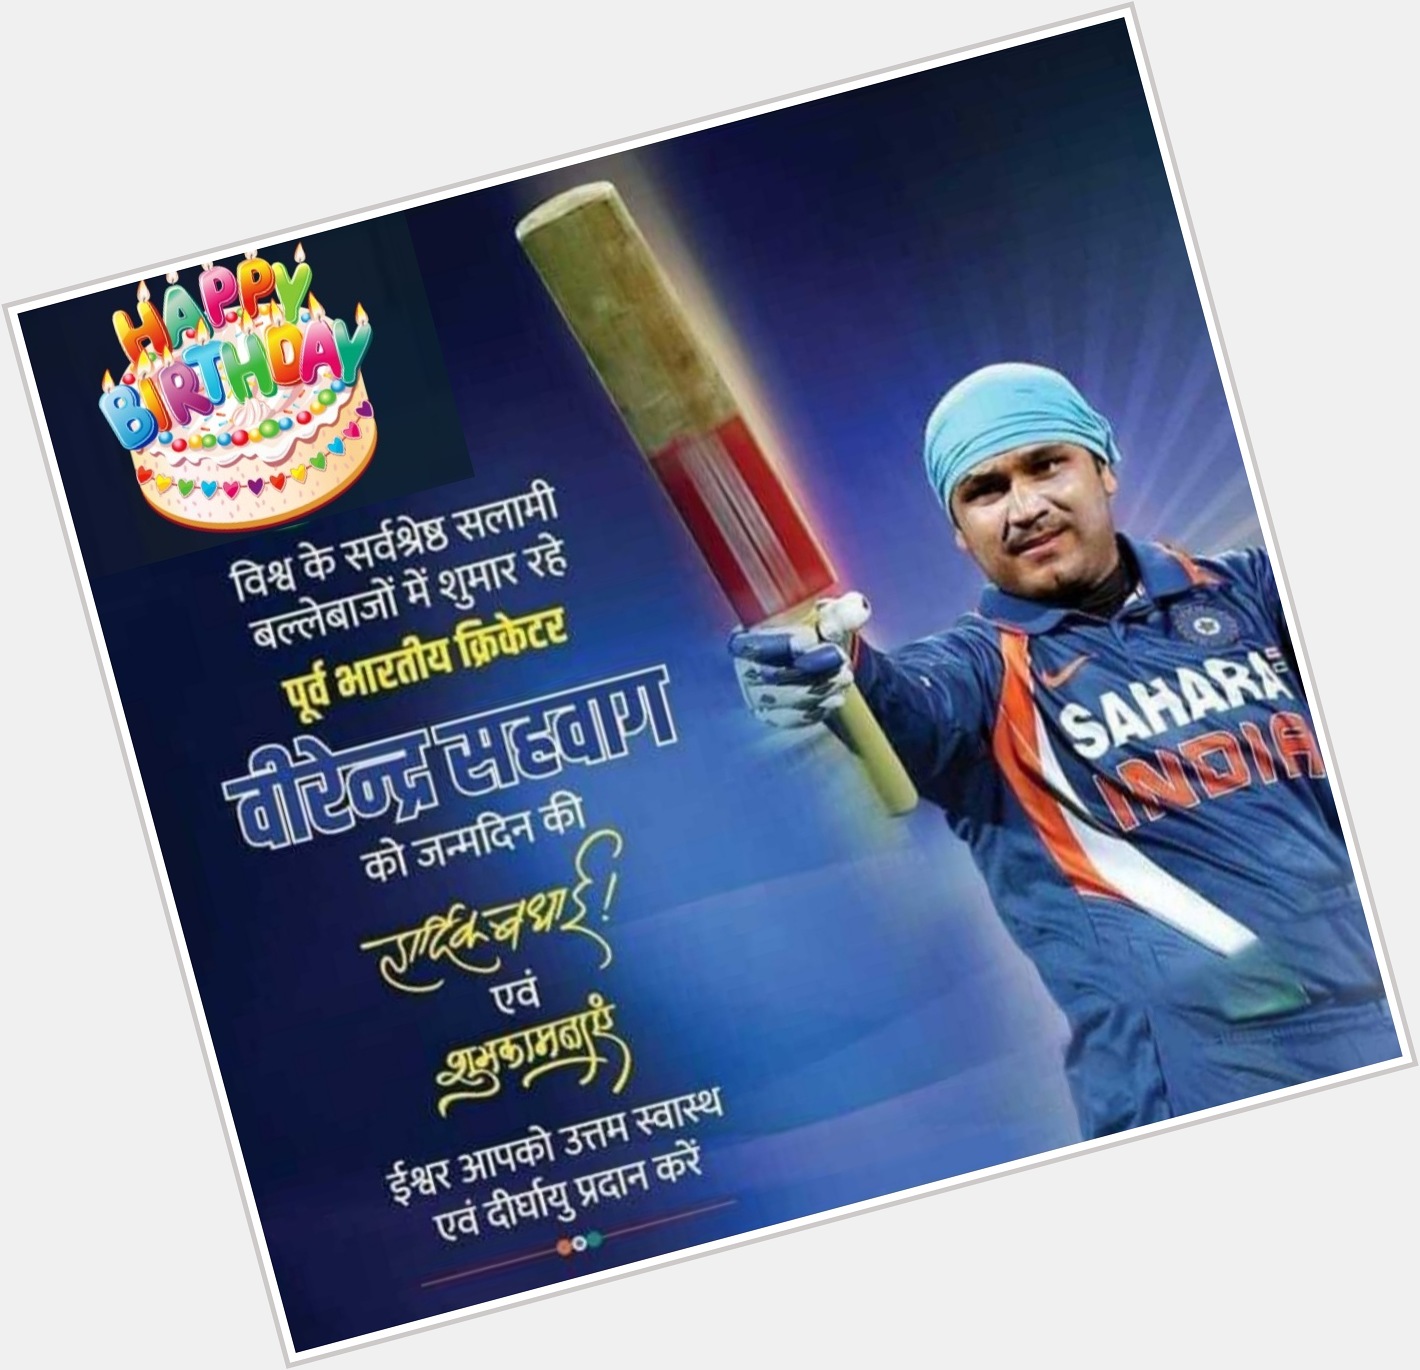 Indian batsman Virender Sehwag happy Birthday 